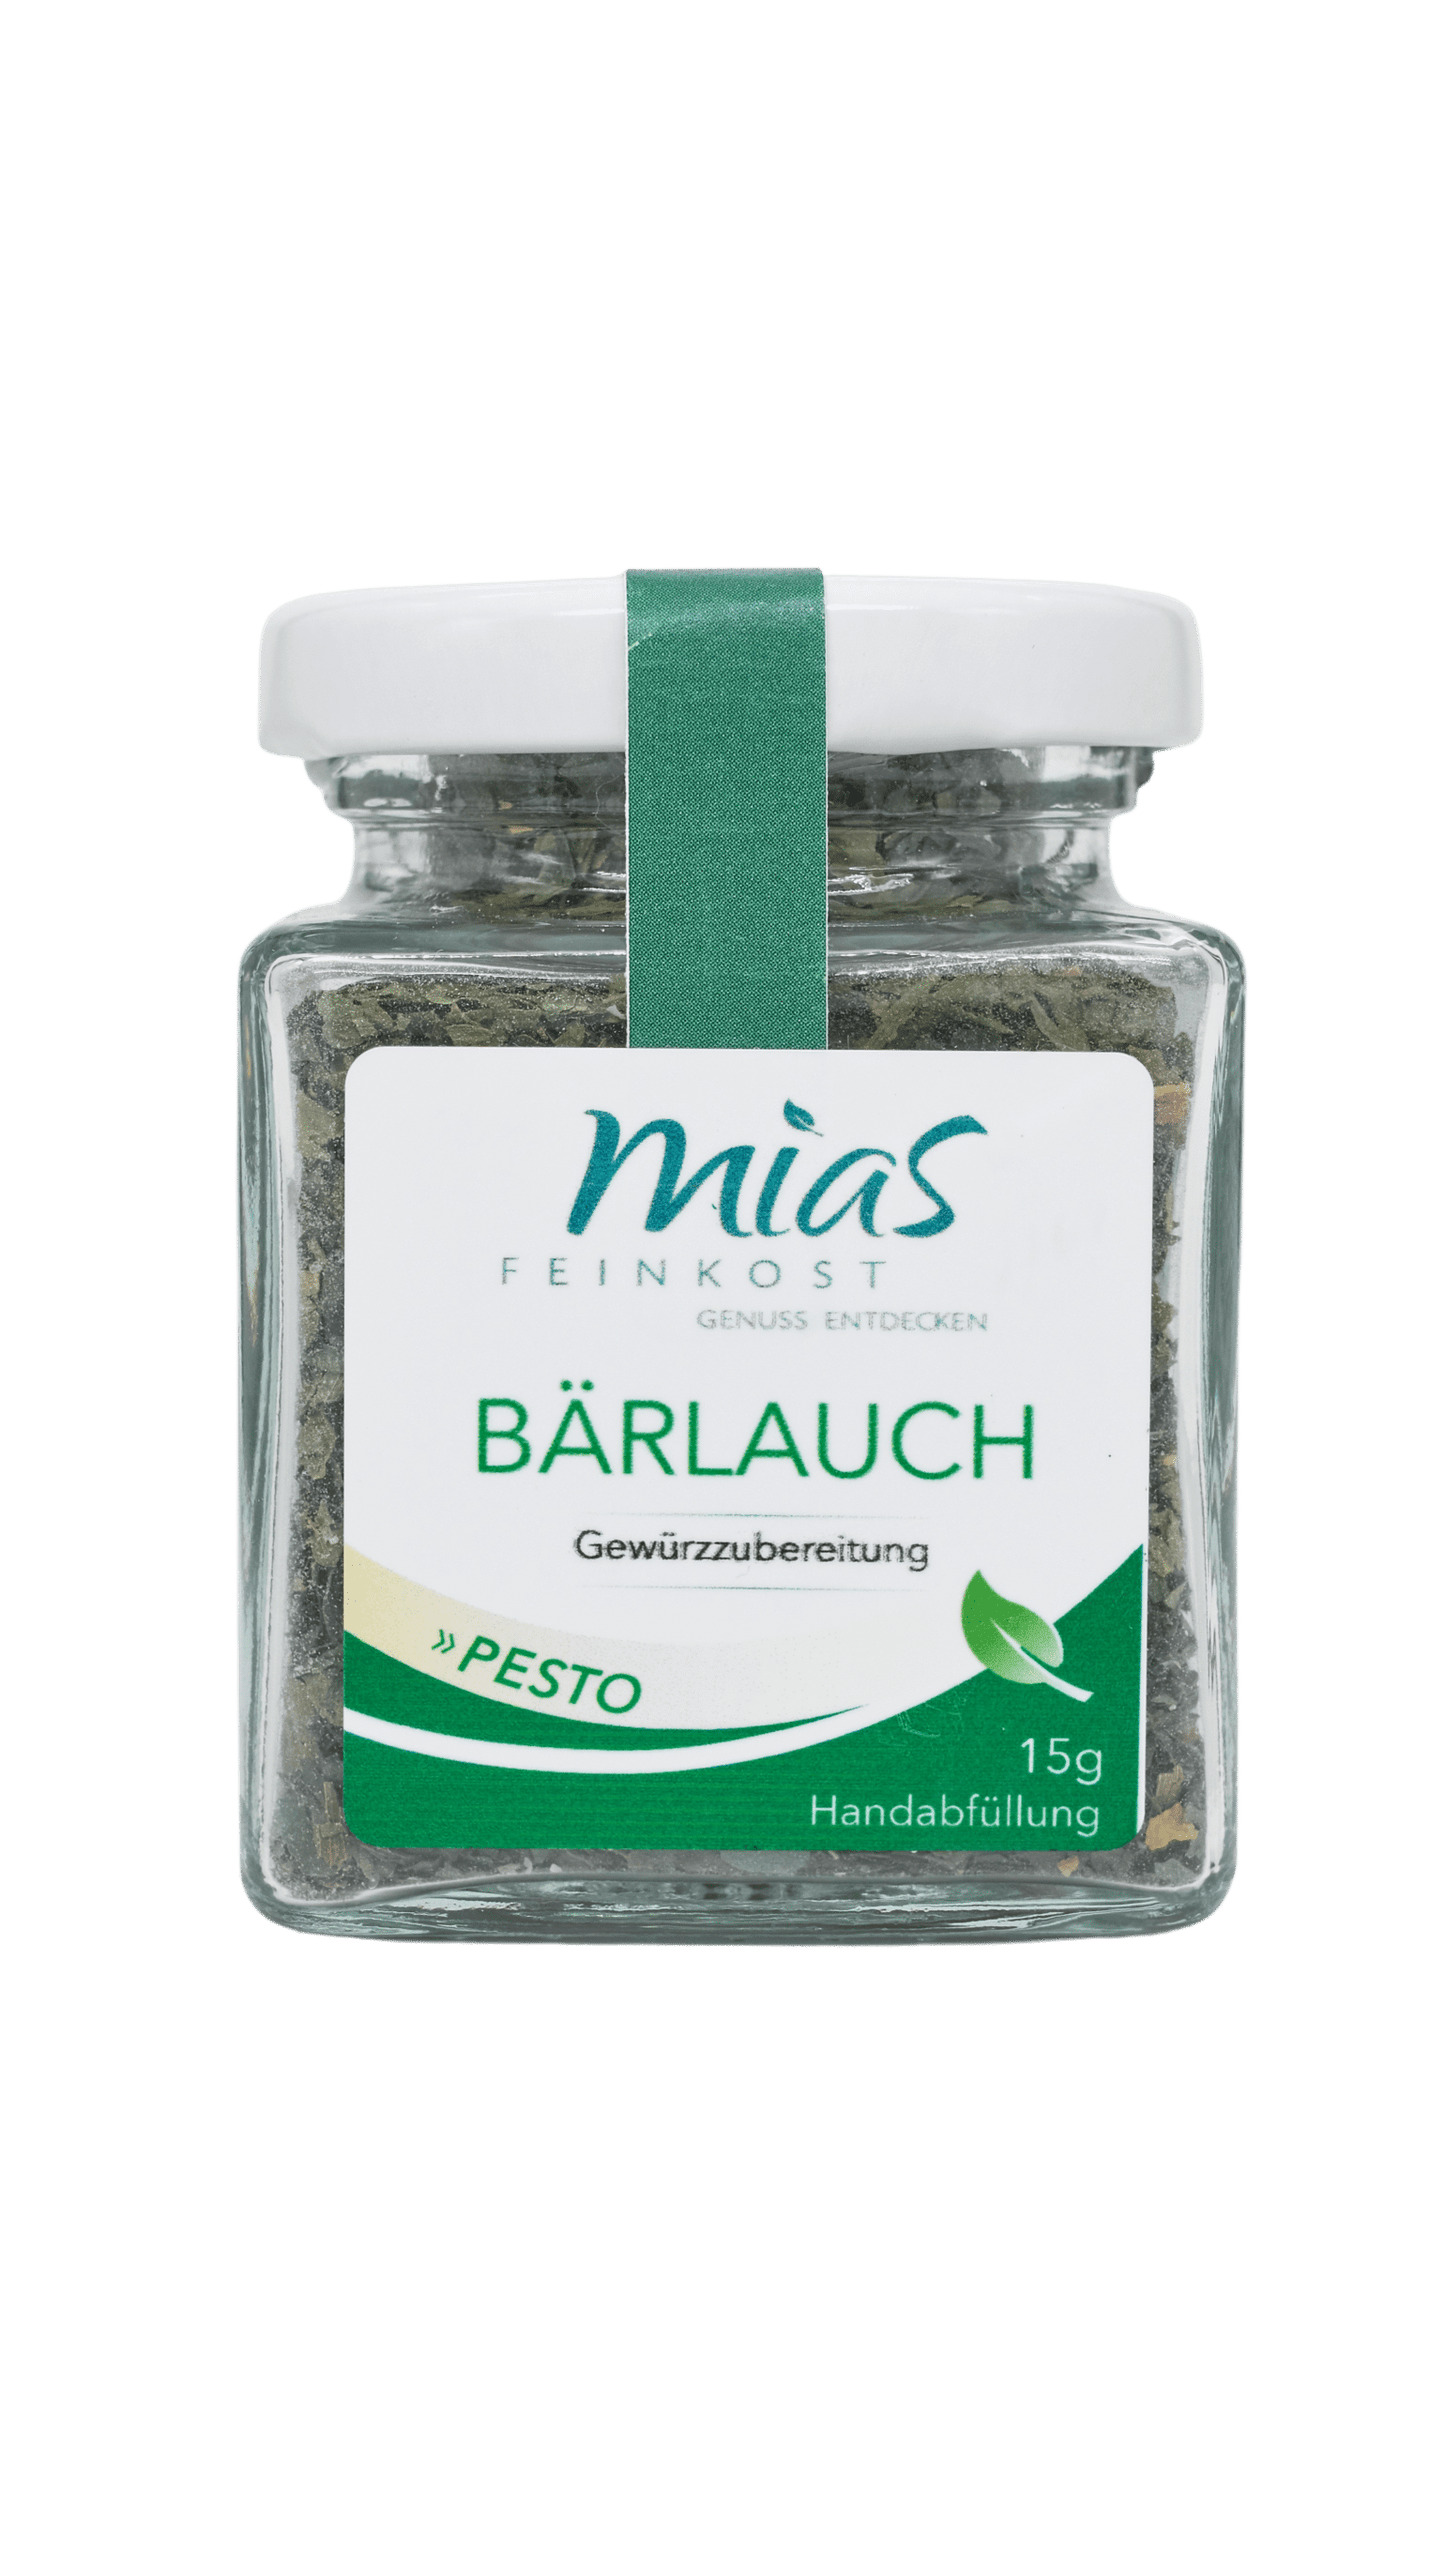 Bärlauch-Pesto